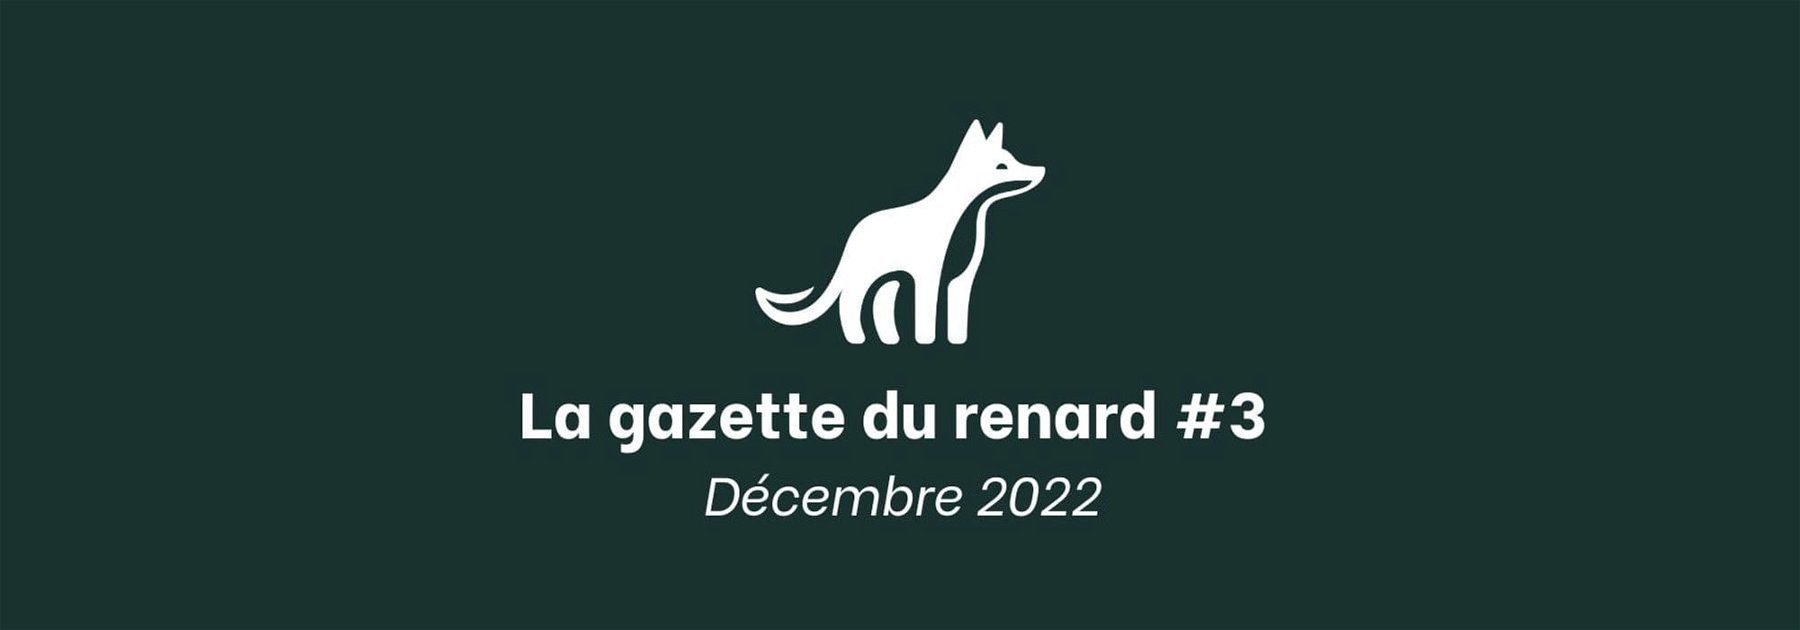 La Gazette du Renard #3 - Décembre 2022